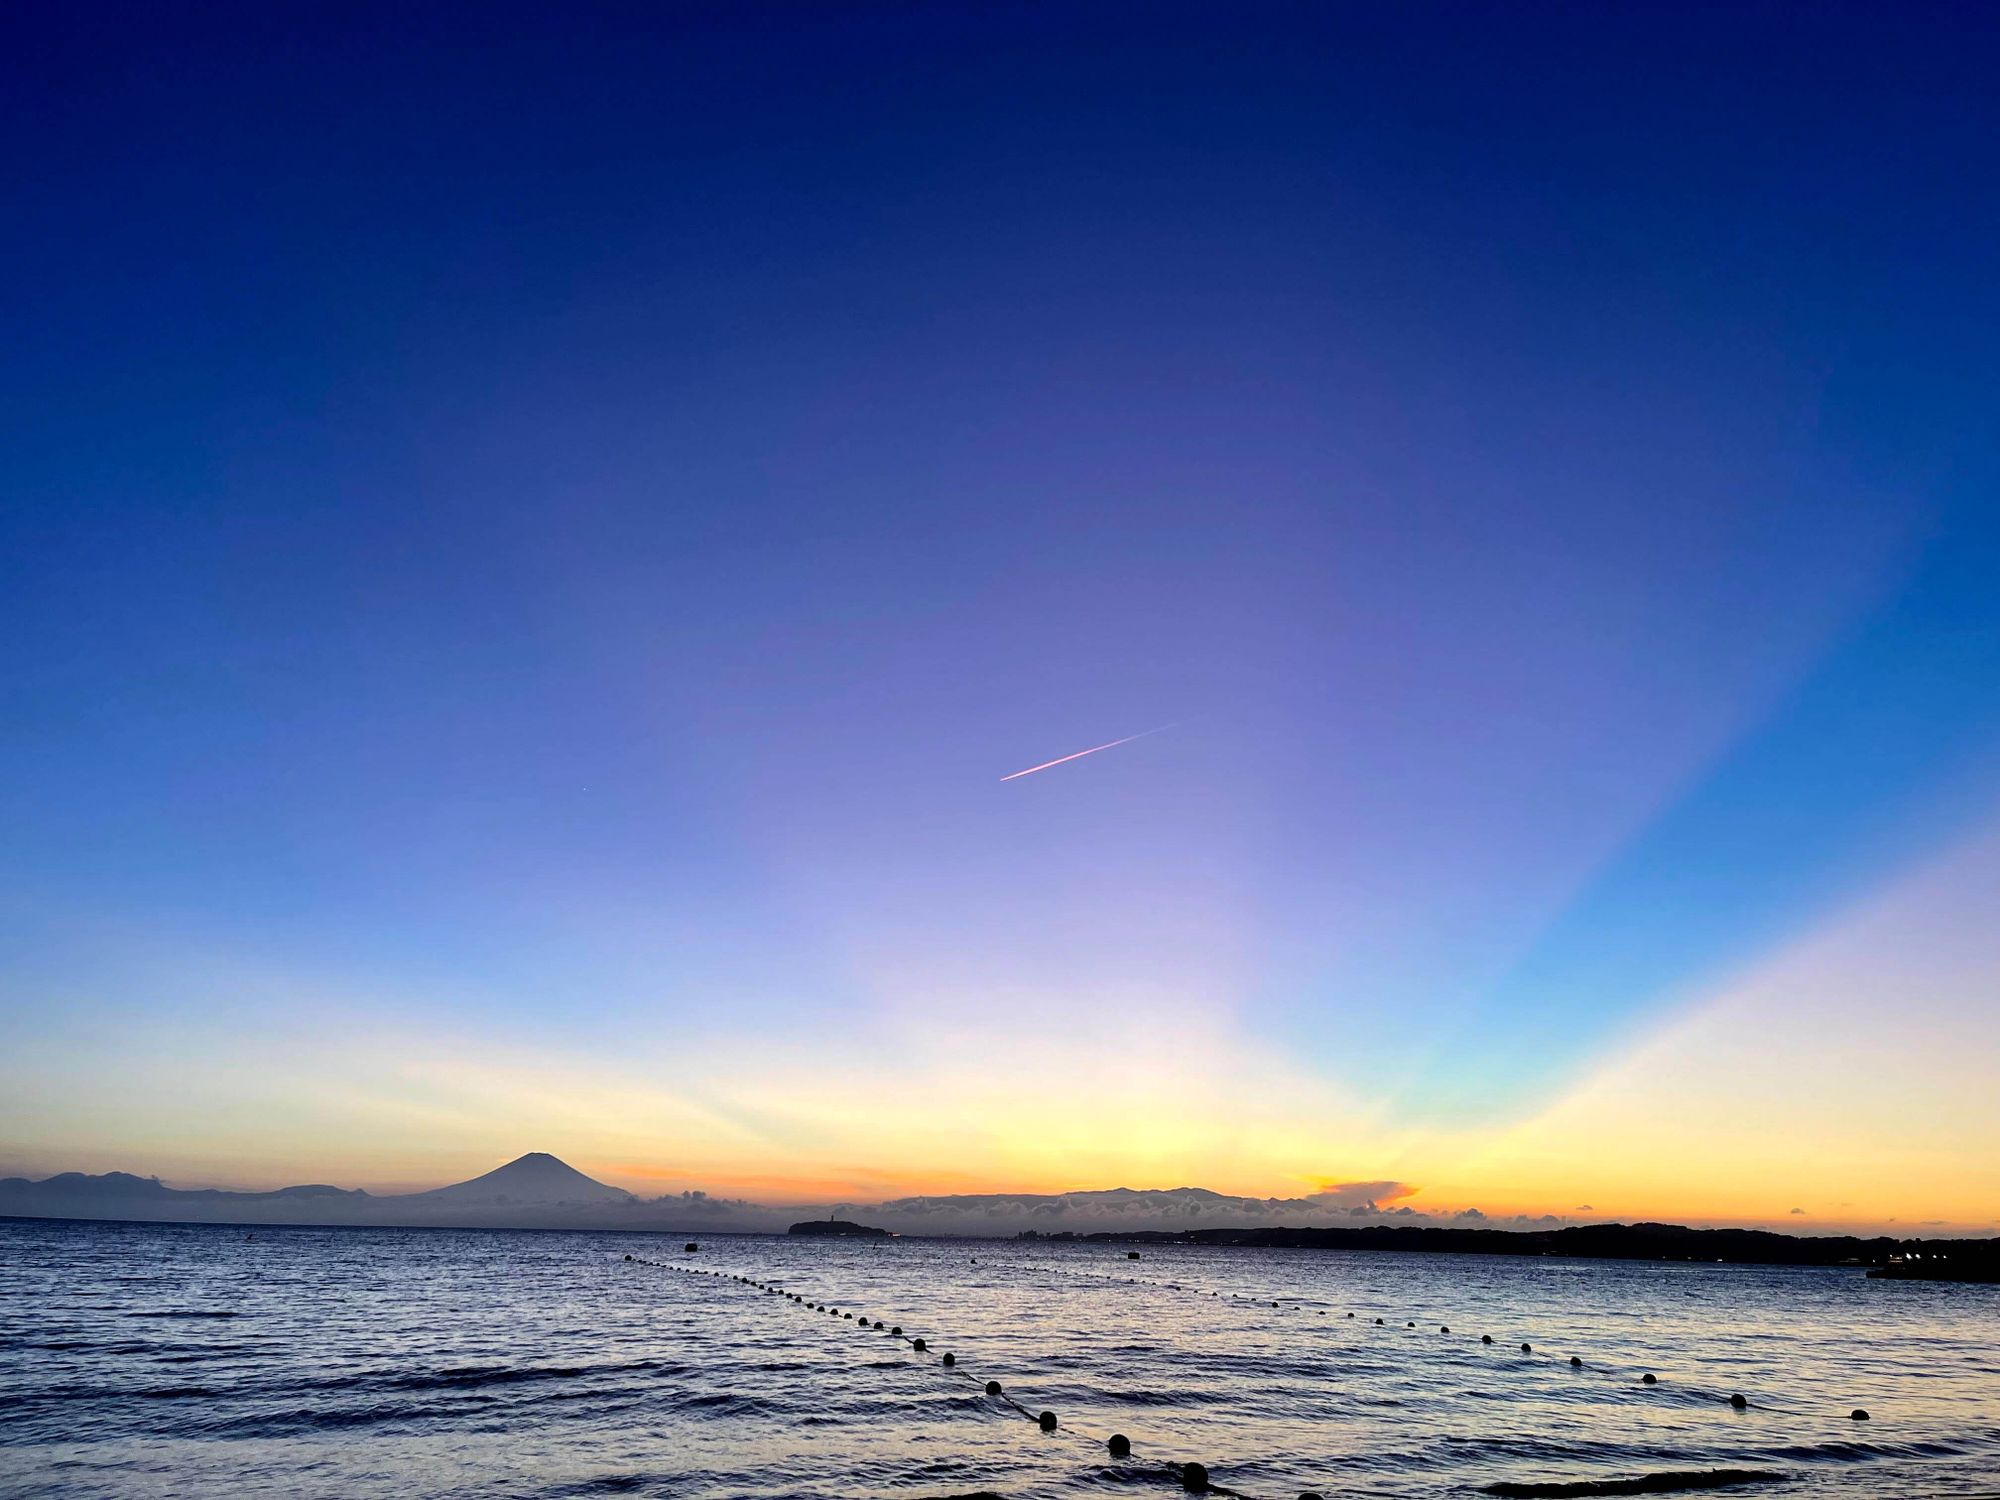 Sunset in Zushi with Mountain Fuji